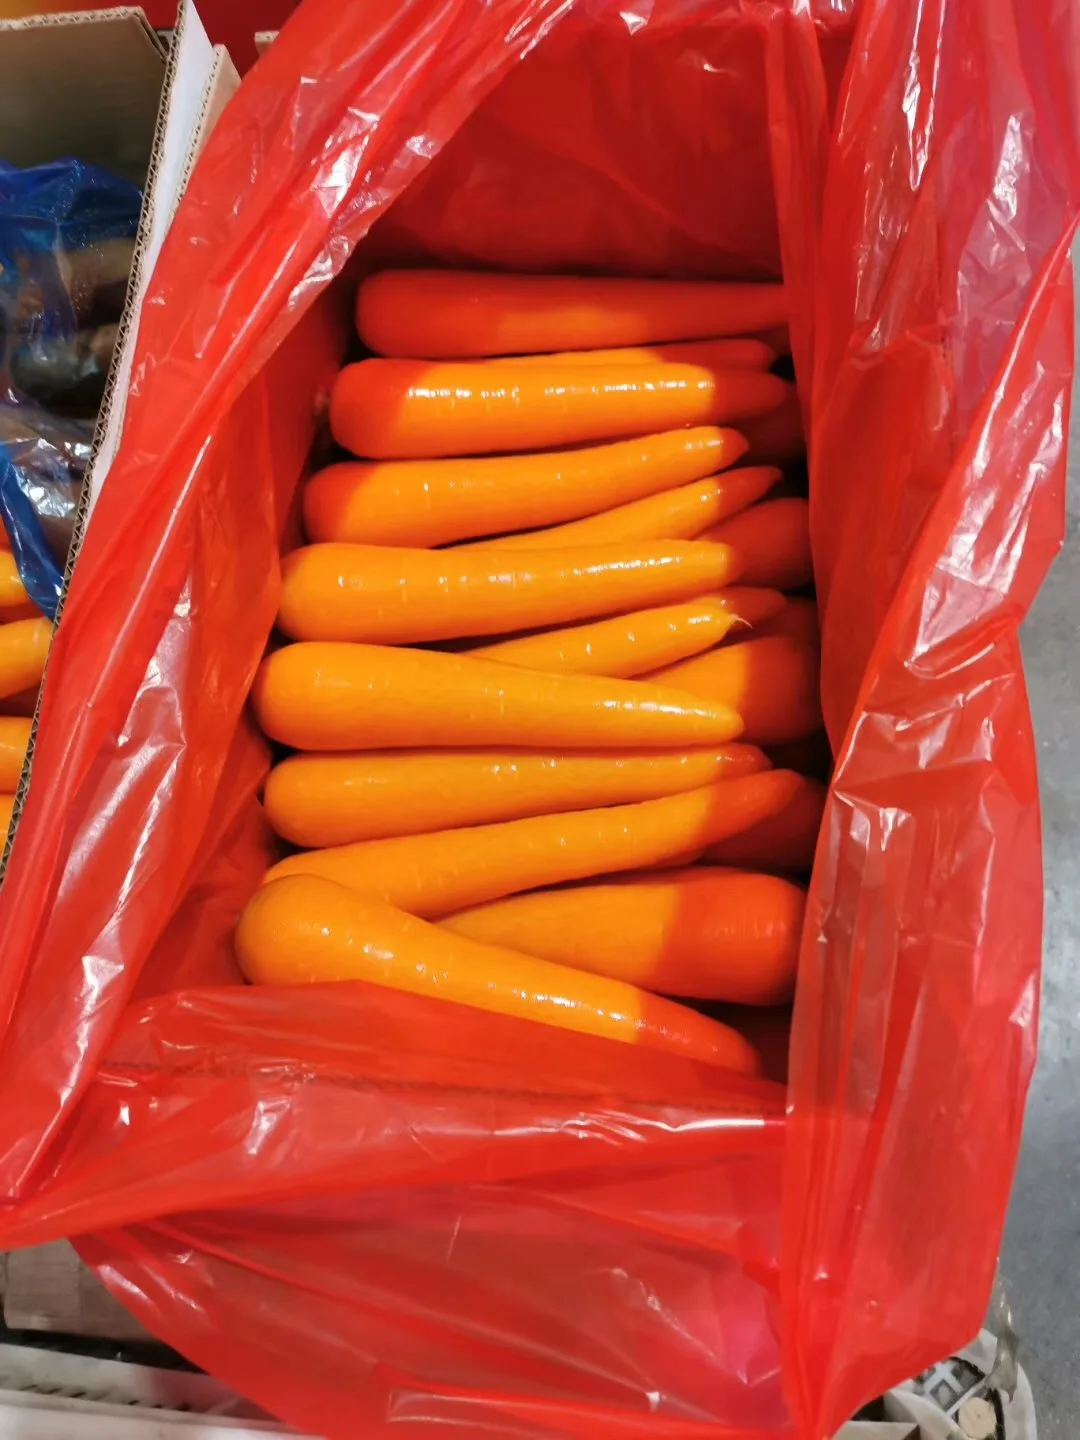 
fresh carrot 